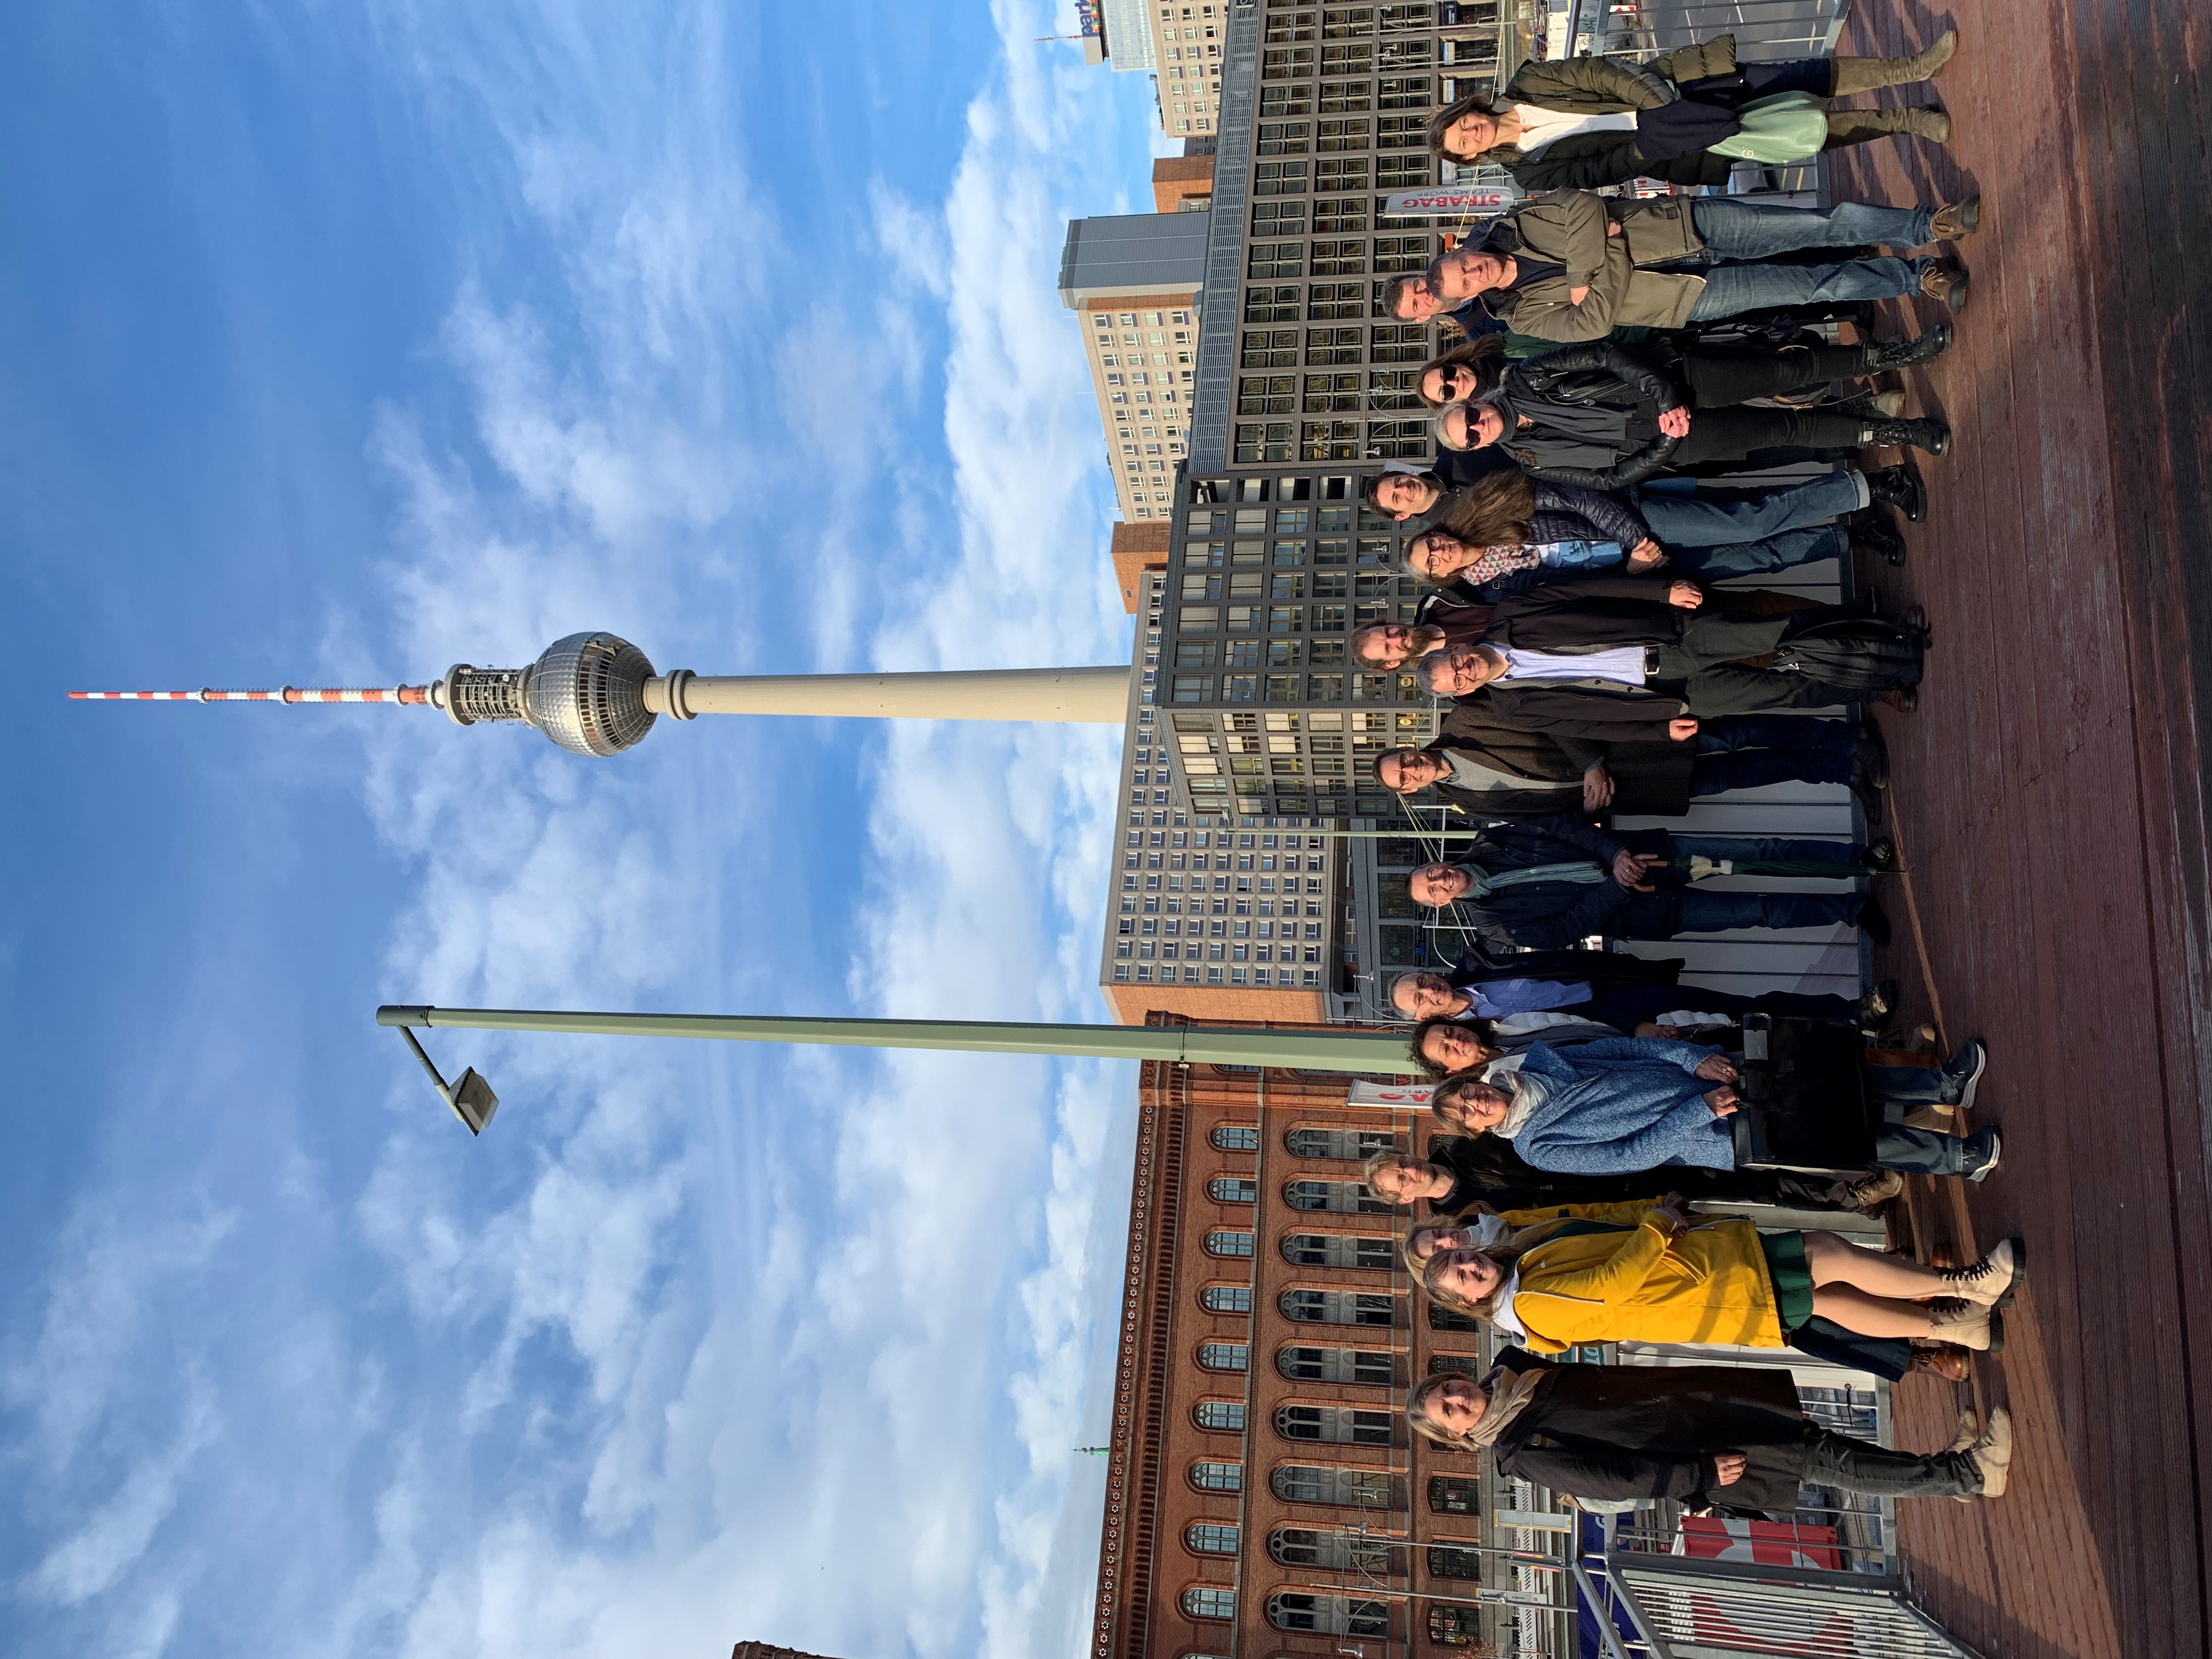 Auf dem Bild sind 18 Personen, die die Kommission "Umgang mit archäologischem Kulturgut" gegründet haben. Sie sind in Berlin, denn im Hintergrund kann man den Funkturm am Alexanderplatz sehen.